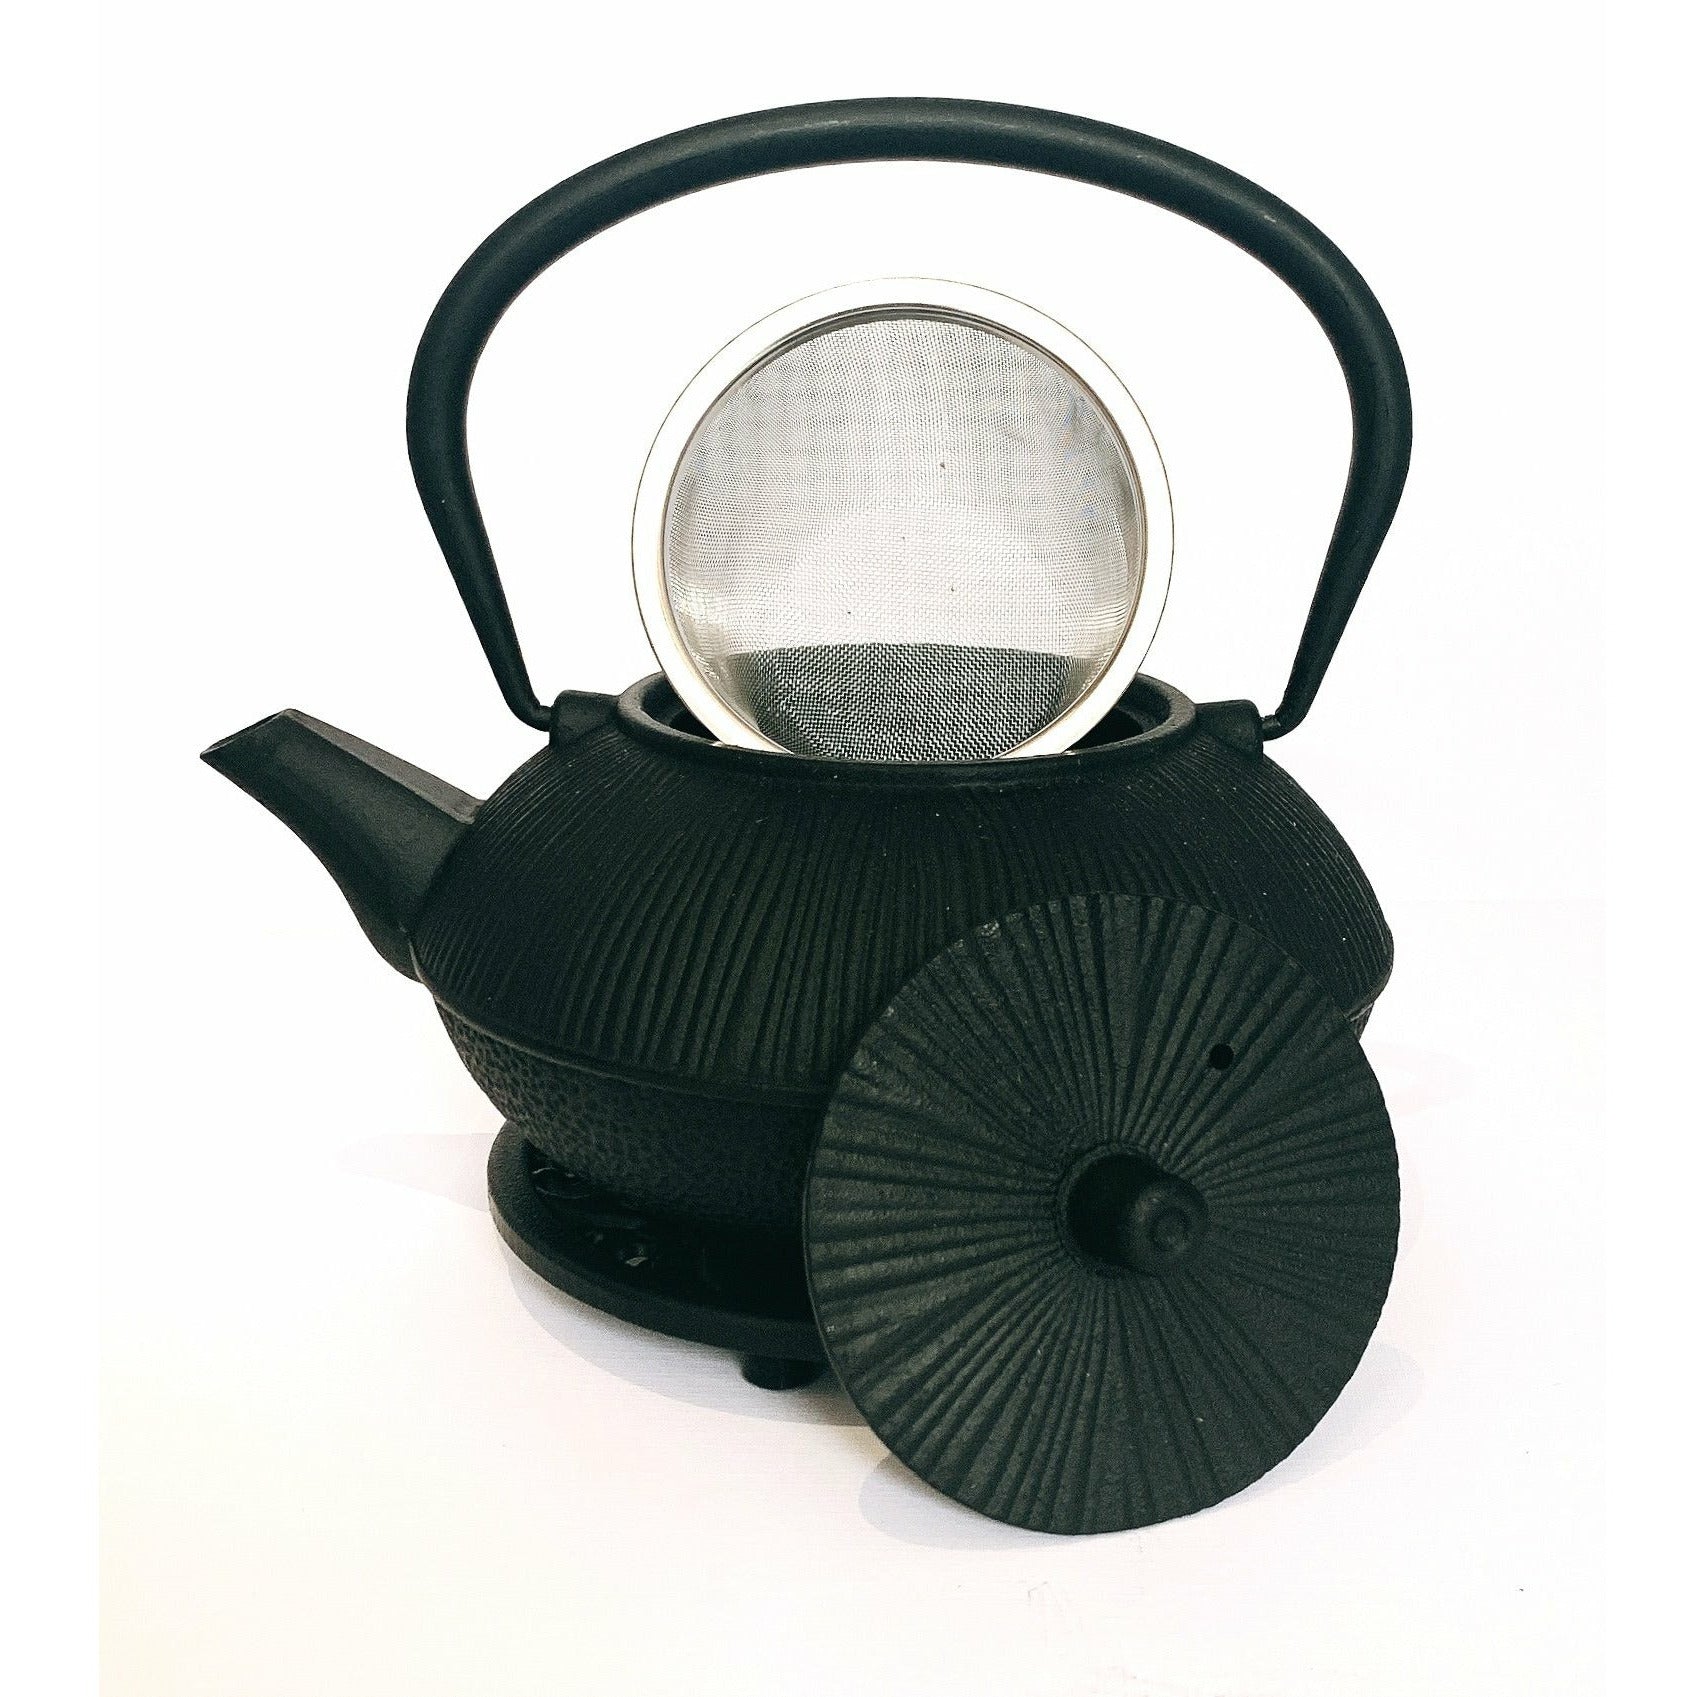 Teapot, Textured Black Iron